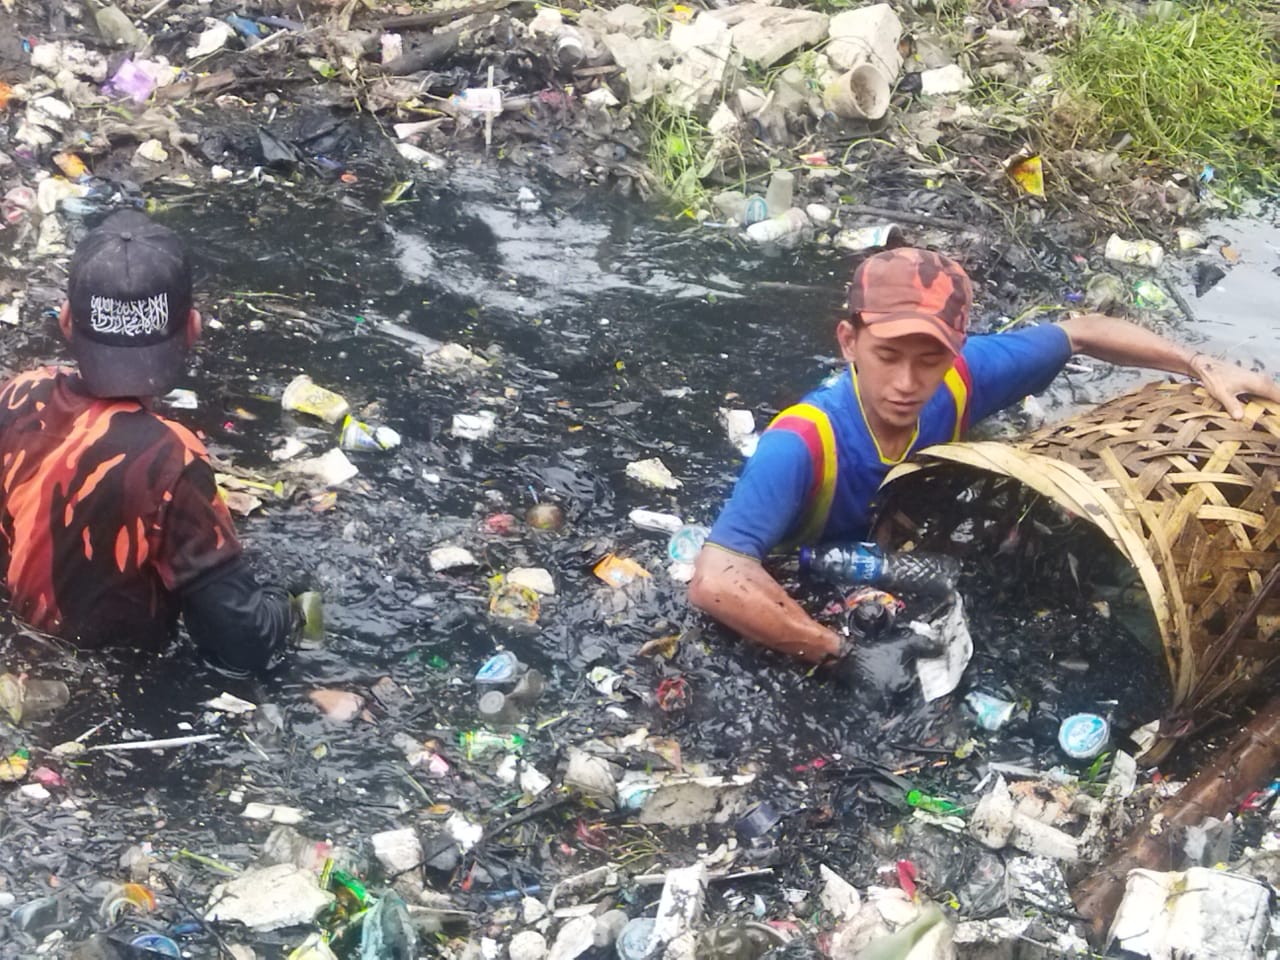 Sinergi Pemuda Pancasila dan Blue Helmet serta Karang Taruna, Baksos Bersihkan Sampah di Kutabumi Tangerang. [Foto: Suaraumat.com/Ist]